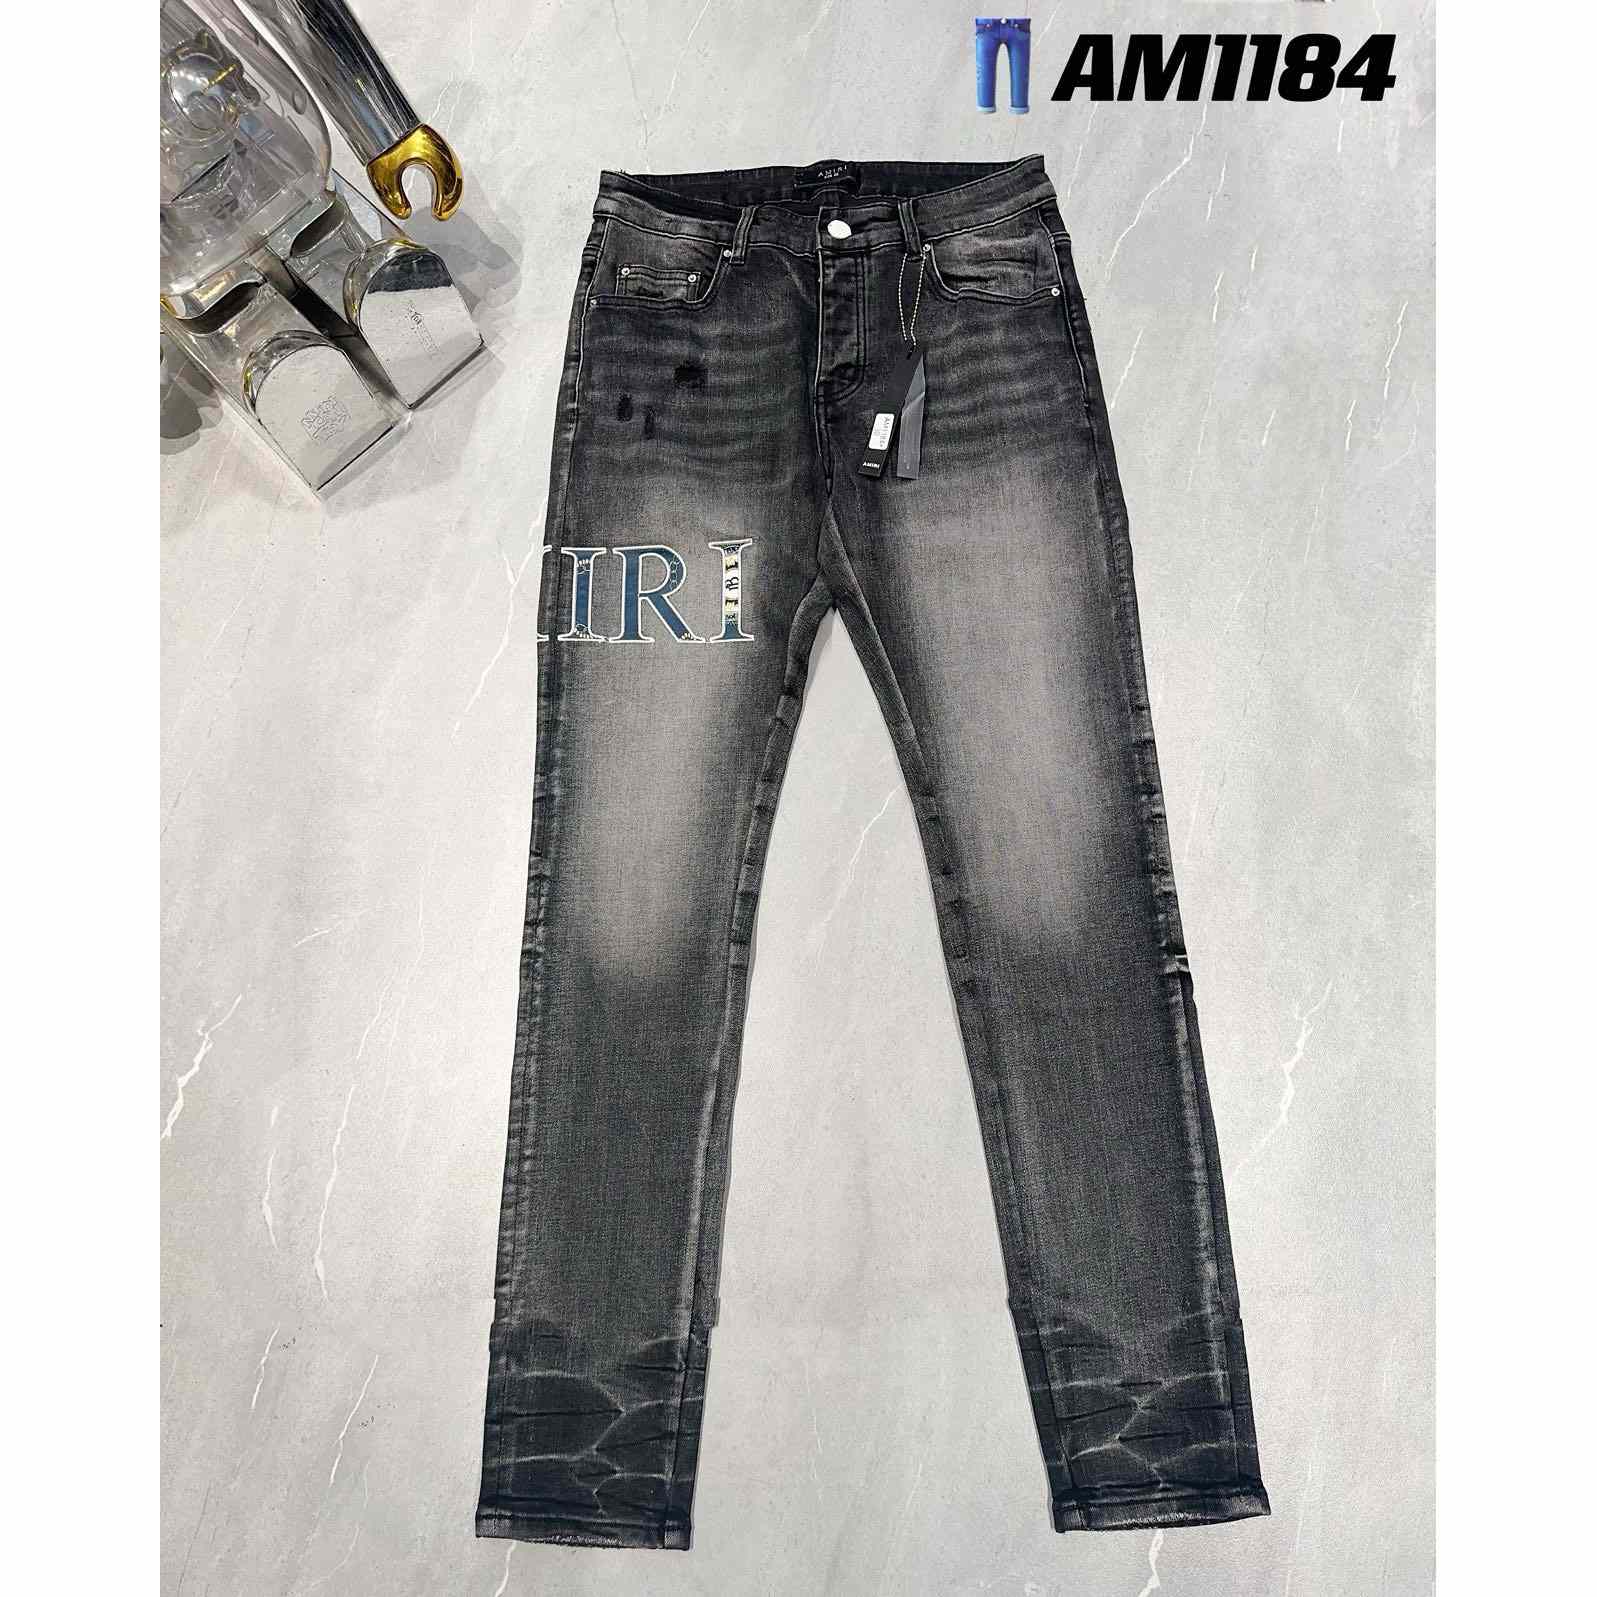 Amiri Jeans     AM1184 - DesignerGu